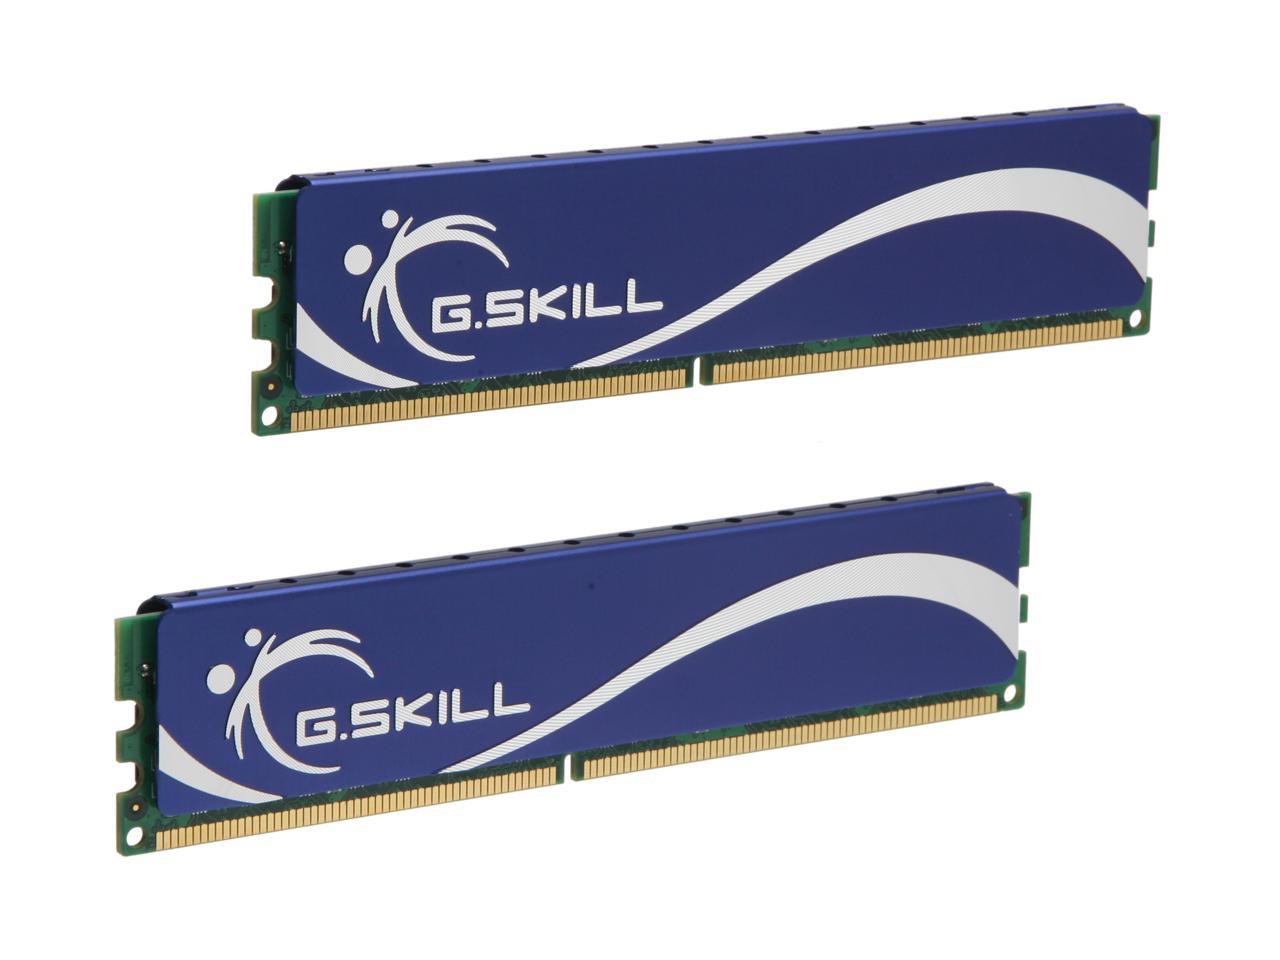 G.SKILL 4GB (2 x 2GB) 240-Pin DDR2 SDRAM DDR2 1066 (PC2 8500) Desktop Memory Model F2-8500CL5D-4GBPQ